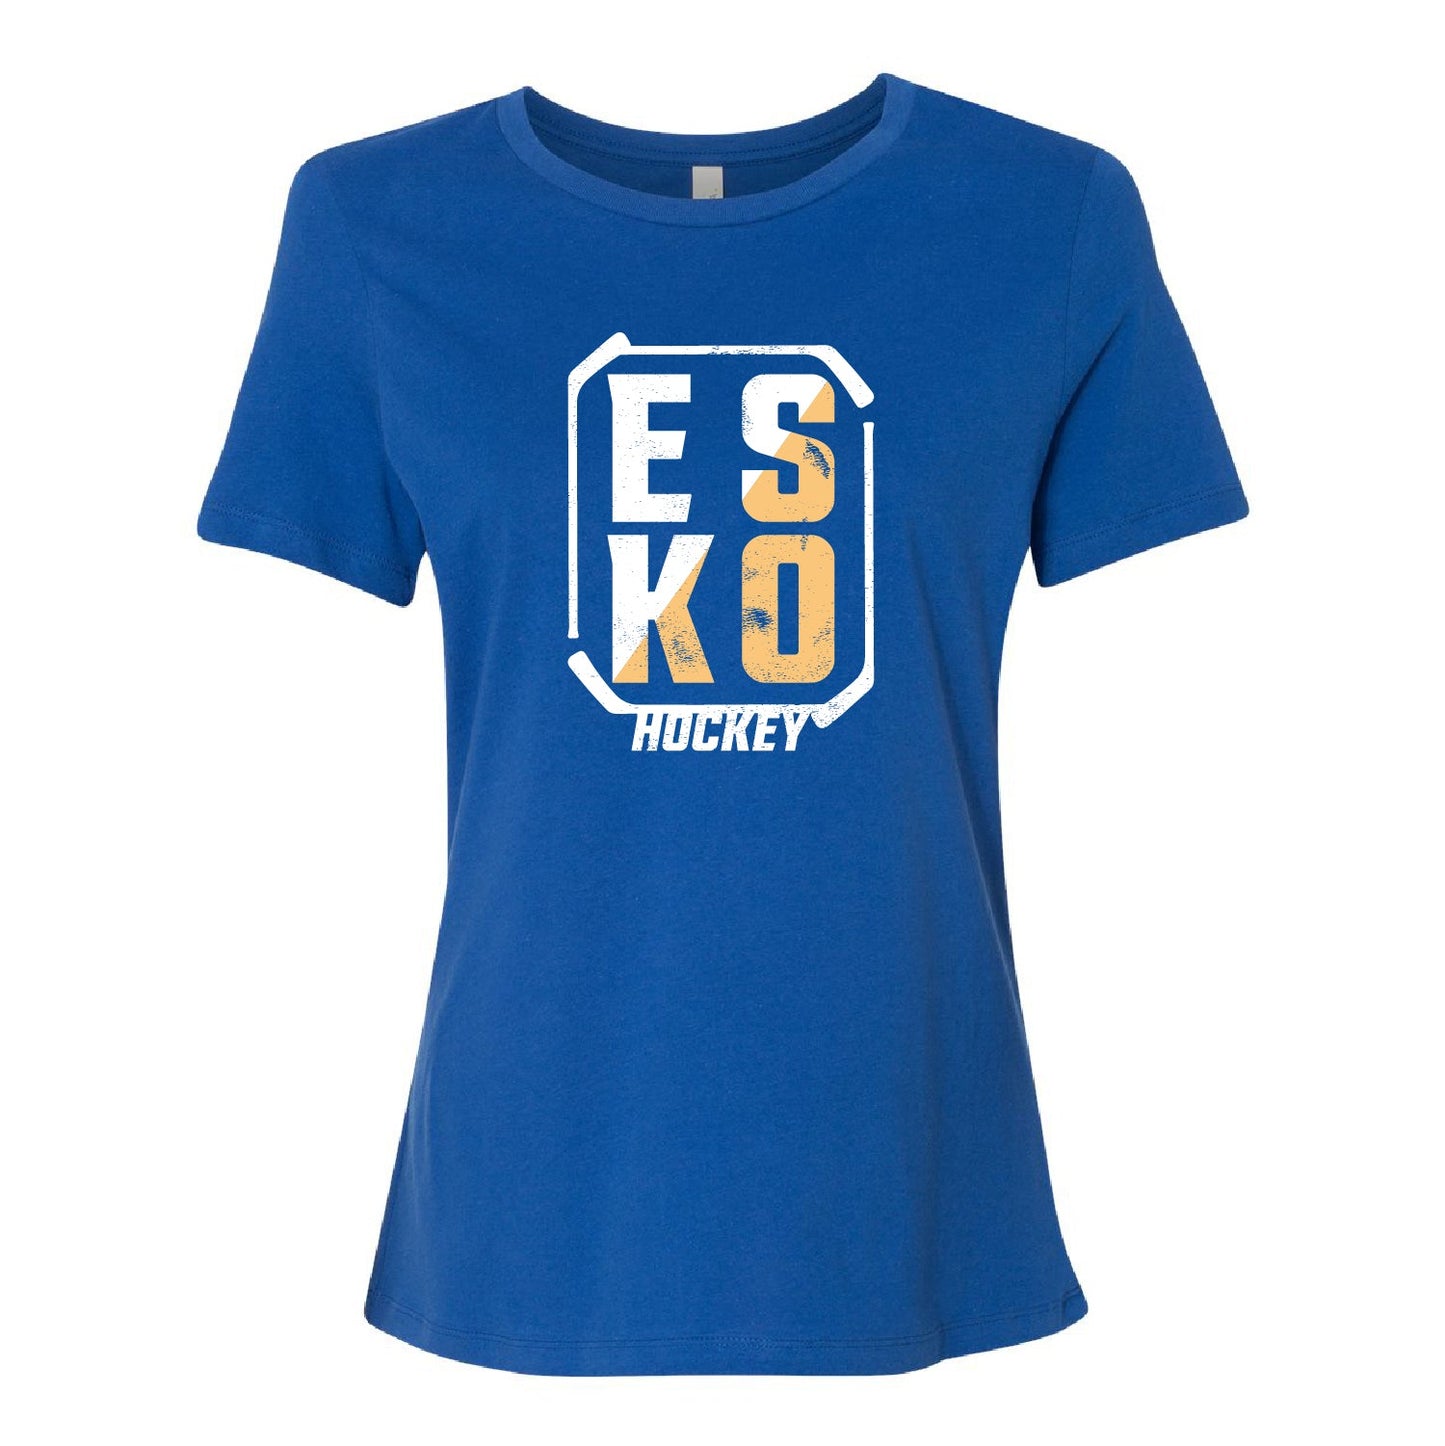 Esko Hockey Women’s Relaxed Jersey Tee